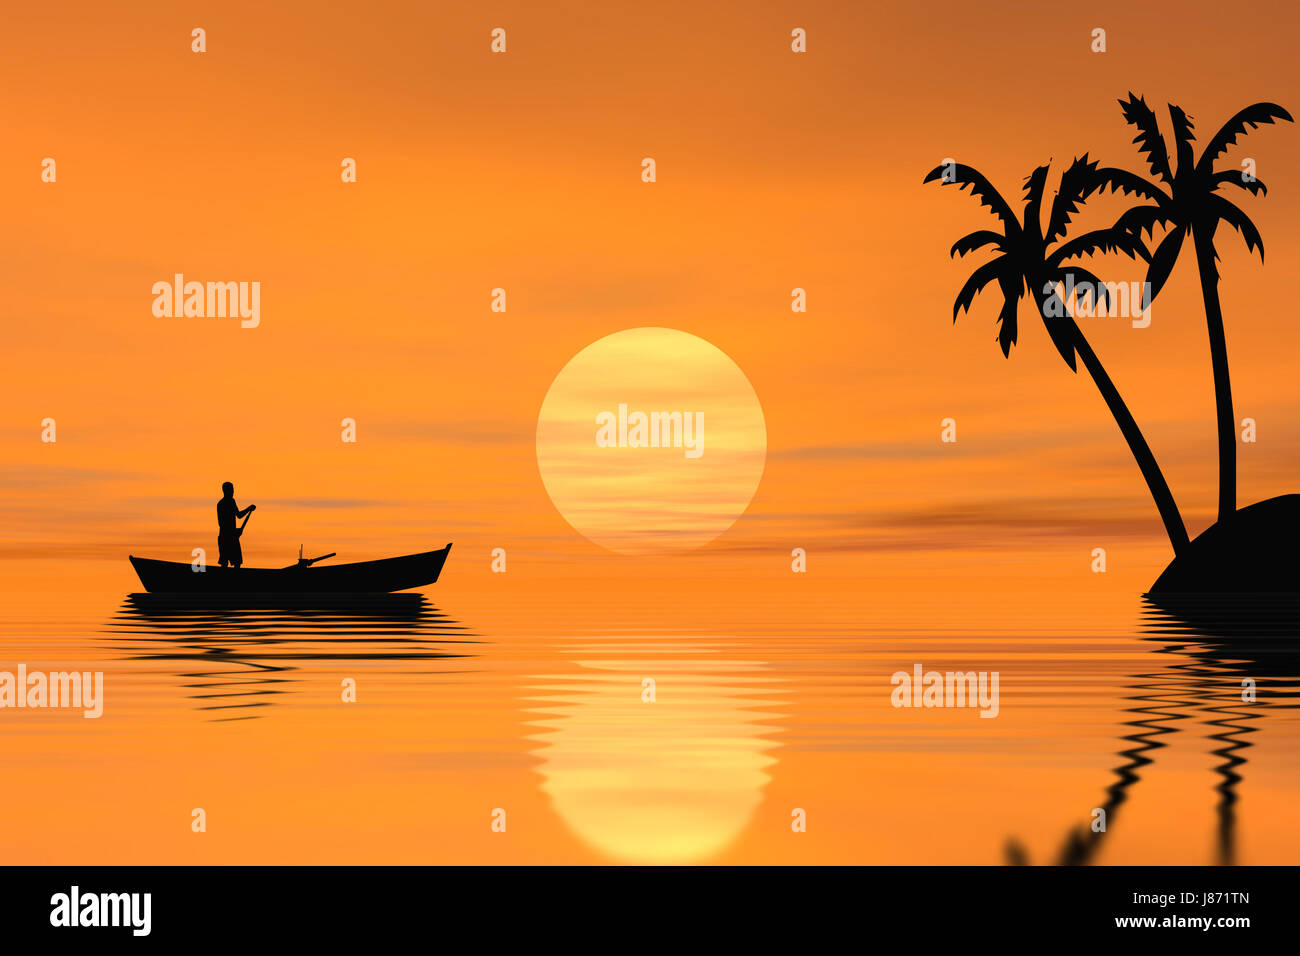 Sonnenuntergang, Sonnenaufgang, Zeile, Nordkap, allein, einsam, Insel,  Island, symbolisch Stockfotografie - Alamy